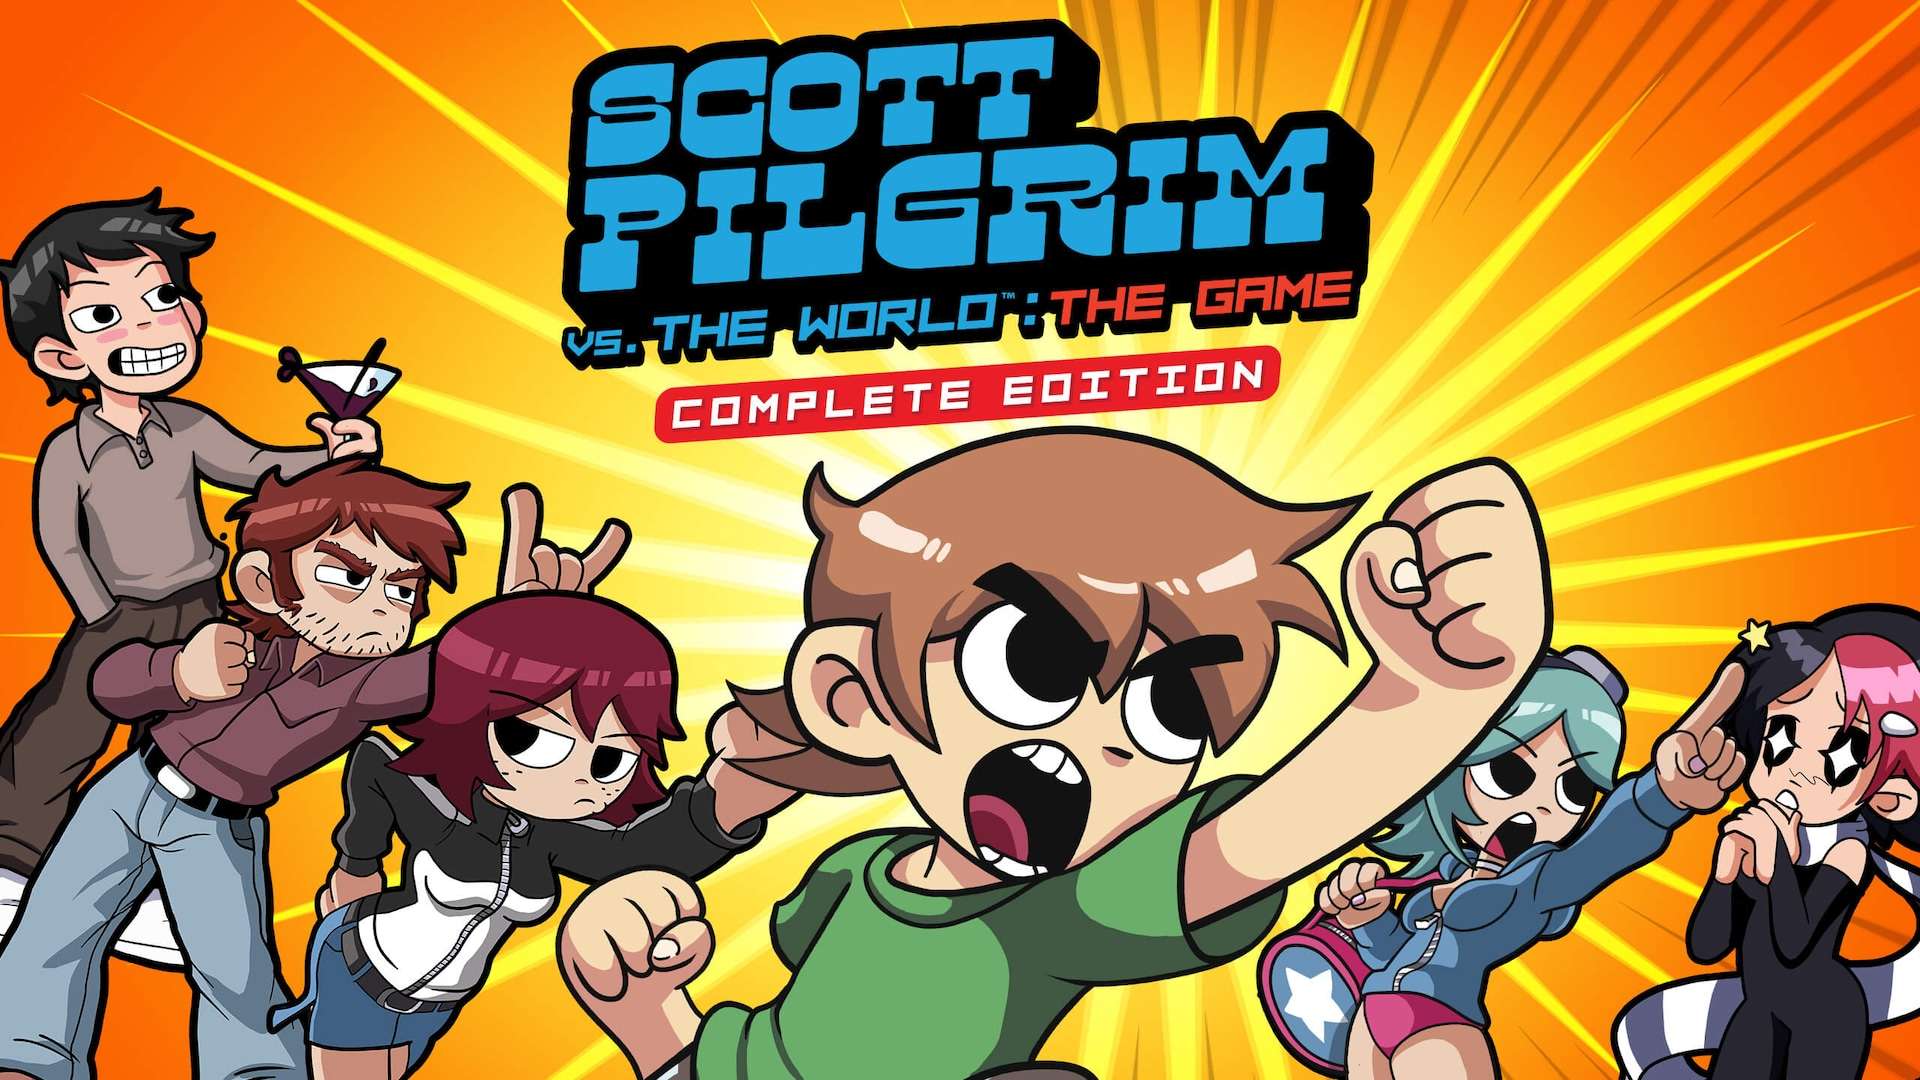 Scott Pilgrim vs.The World: The Game